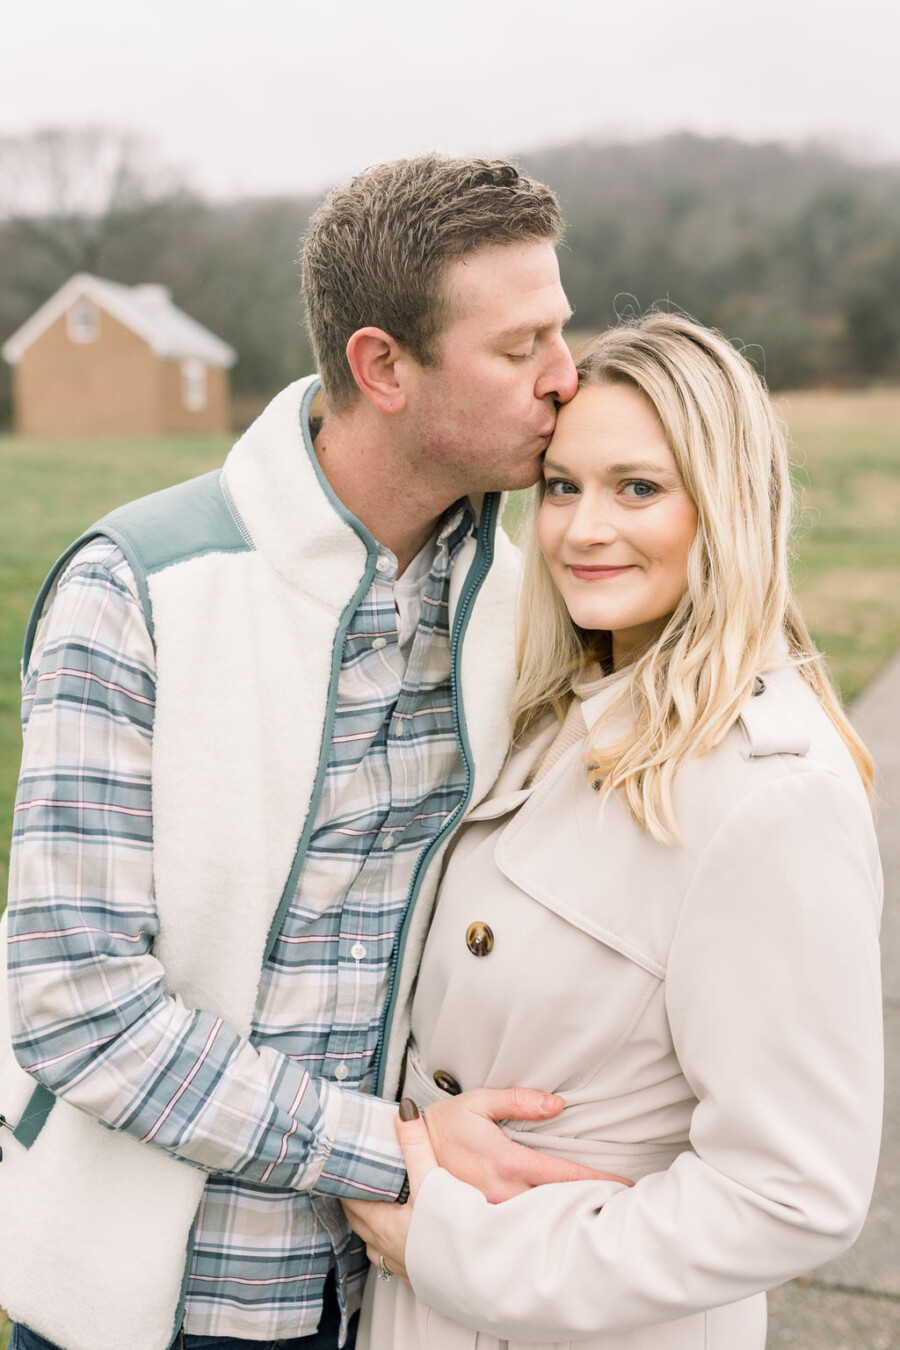 Surprise Pregnancy Announcement Nashville Family Photo Session